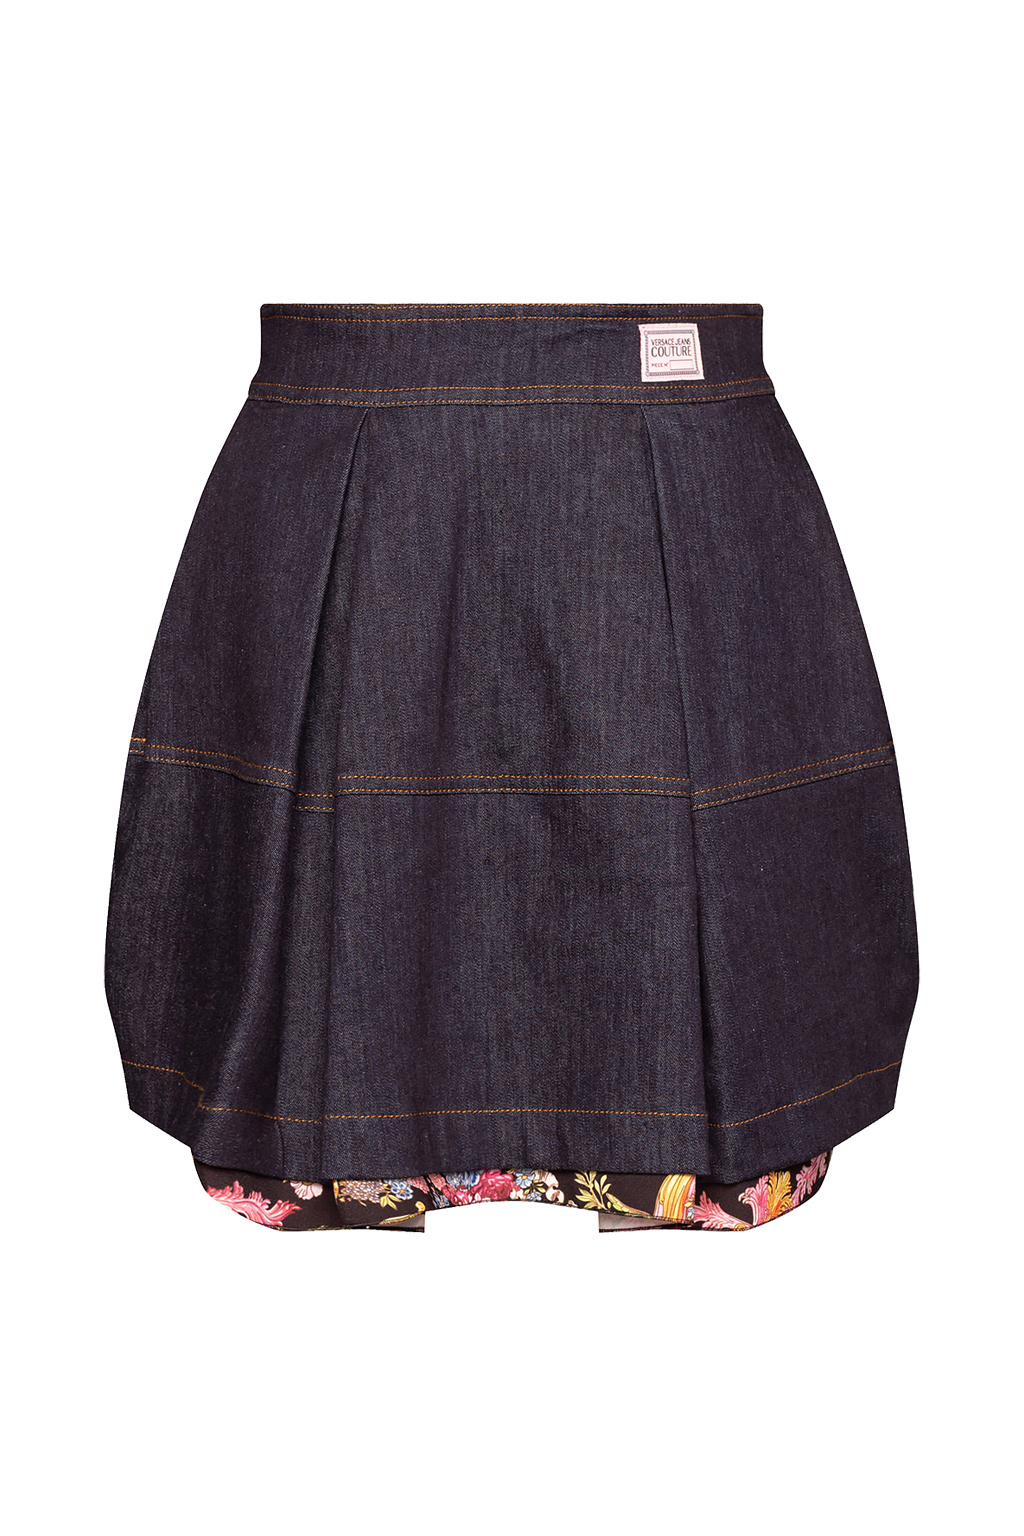 sequin-embellished shorts Rosa Denim skirt